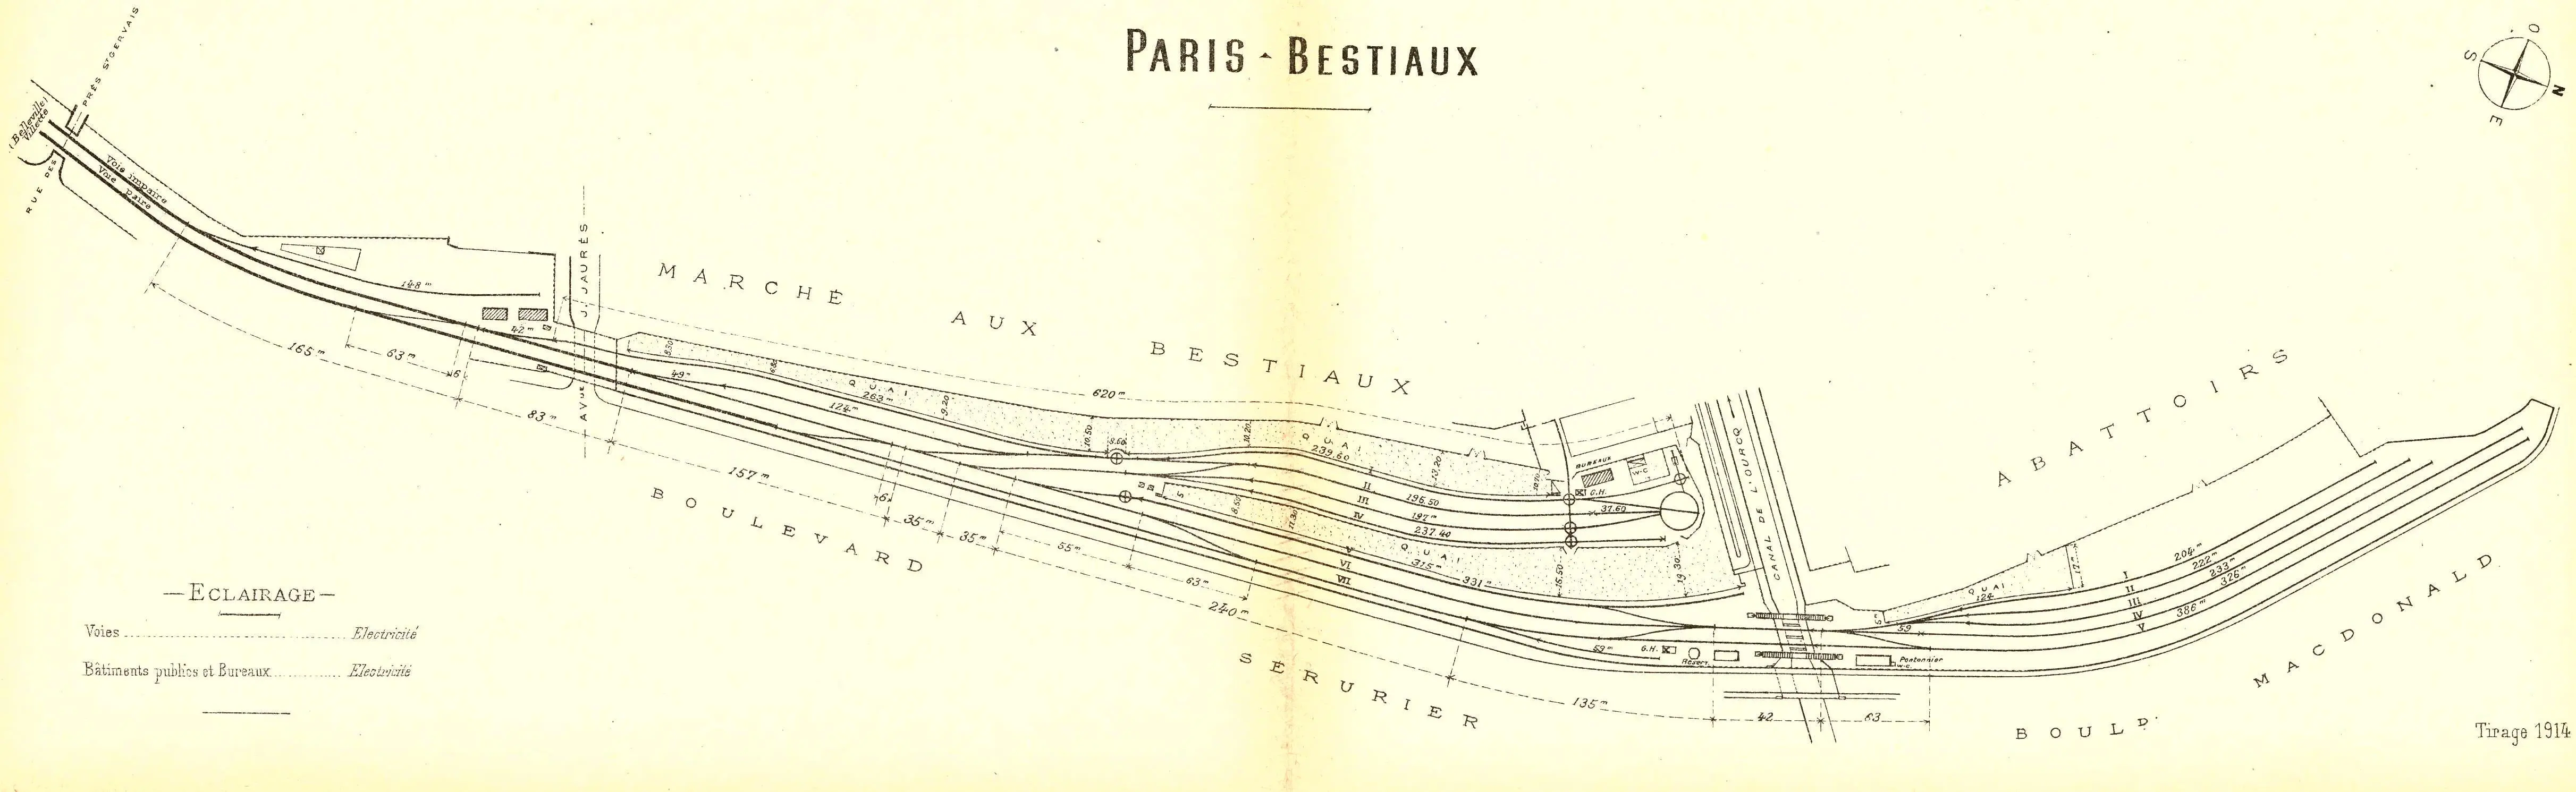 Plan des installations de la gare de Paris-Bestiaux en 1914 